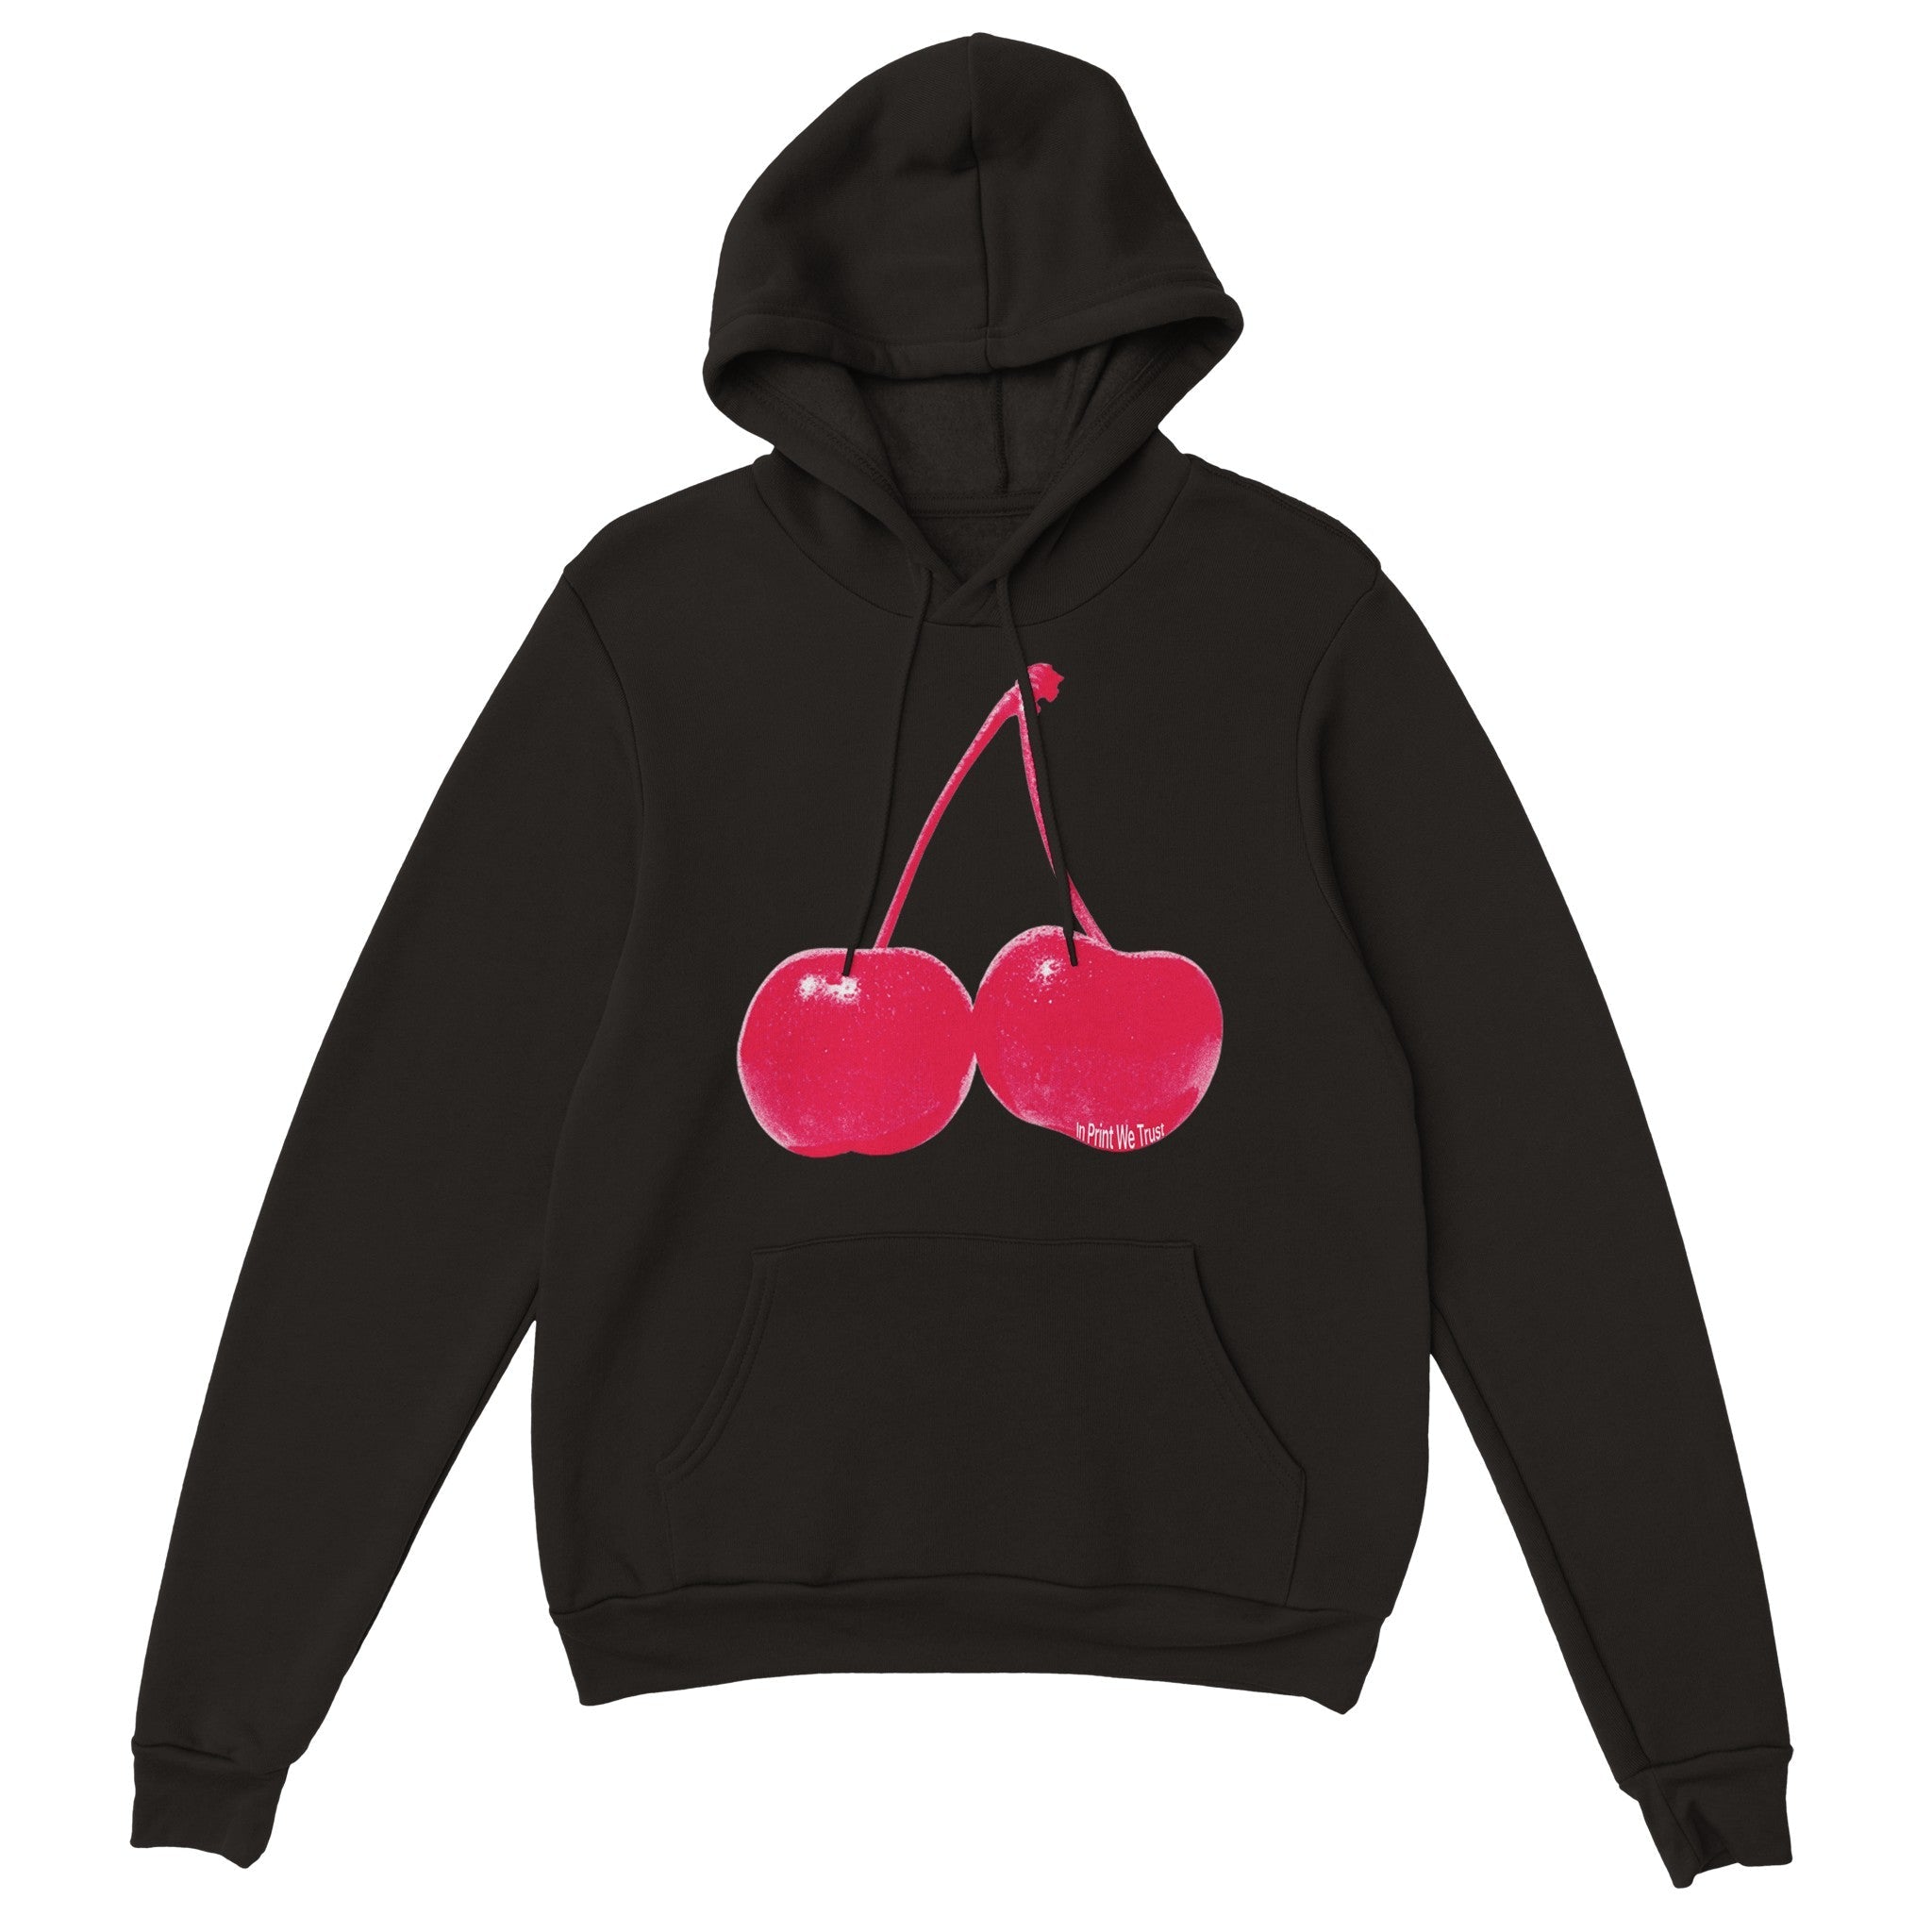 Cherry' hoodie